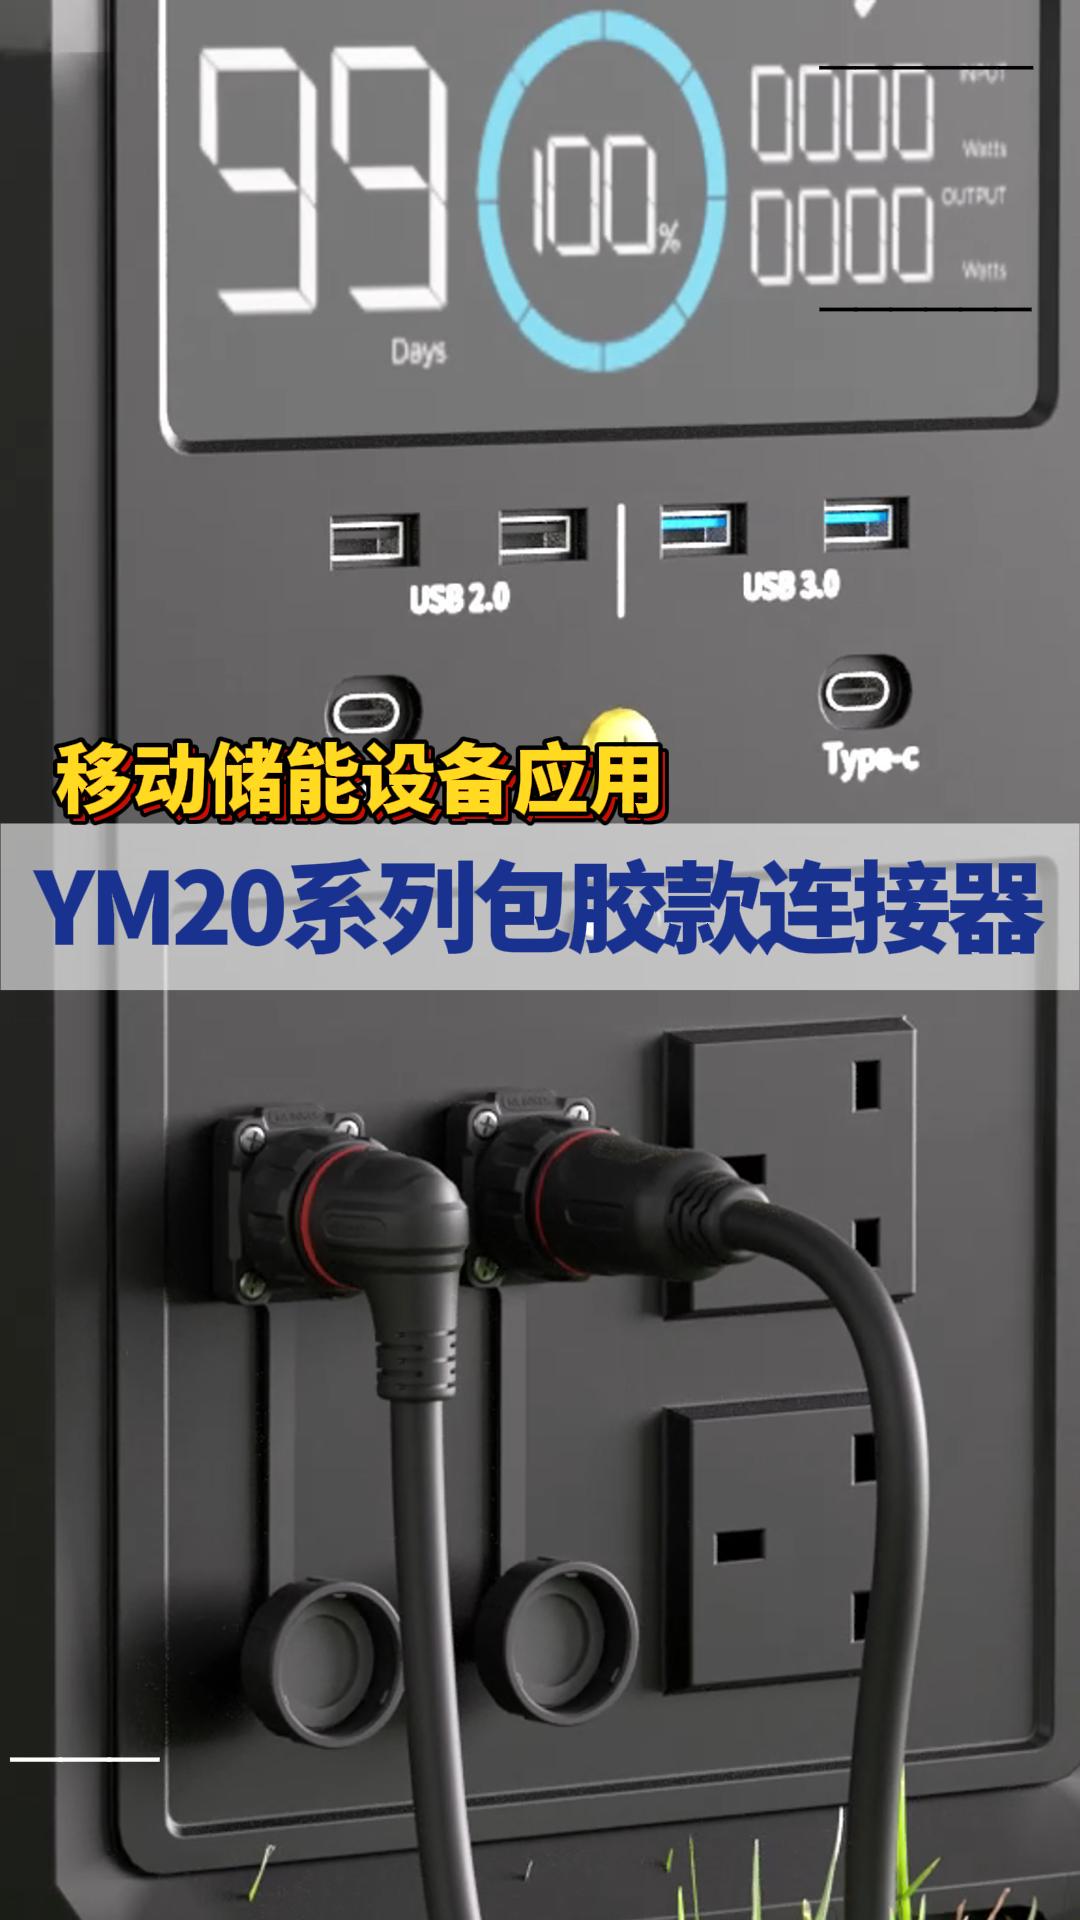 凌科電氣YM20系列包膠款工業級連接器適配移動儲能應用#連接器 #工業級連接器 #凌科電氣  